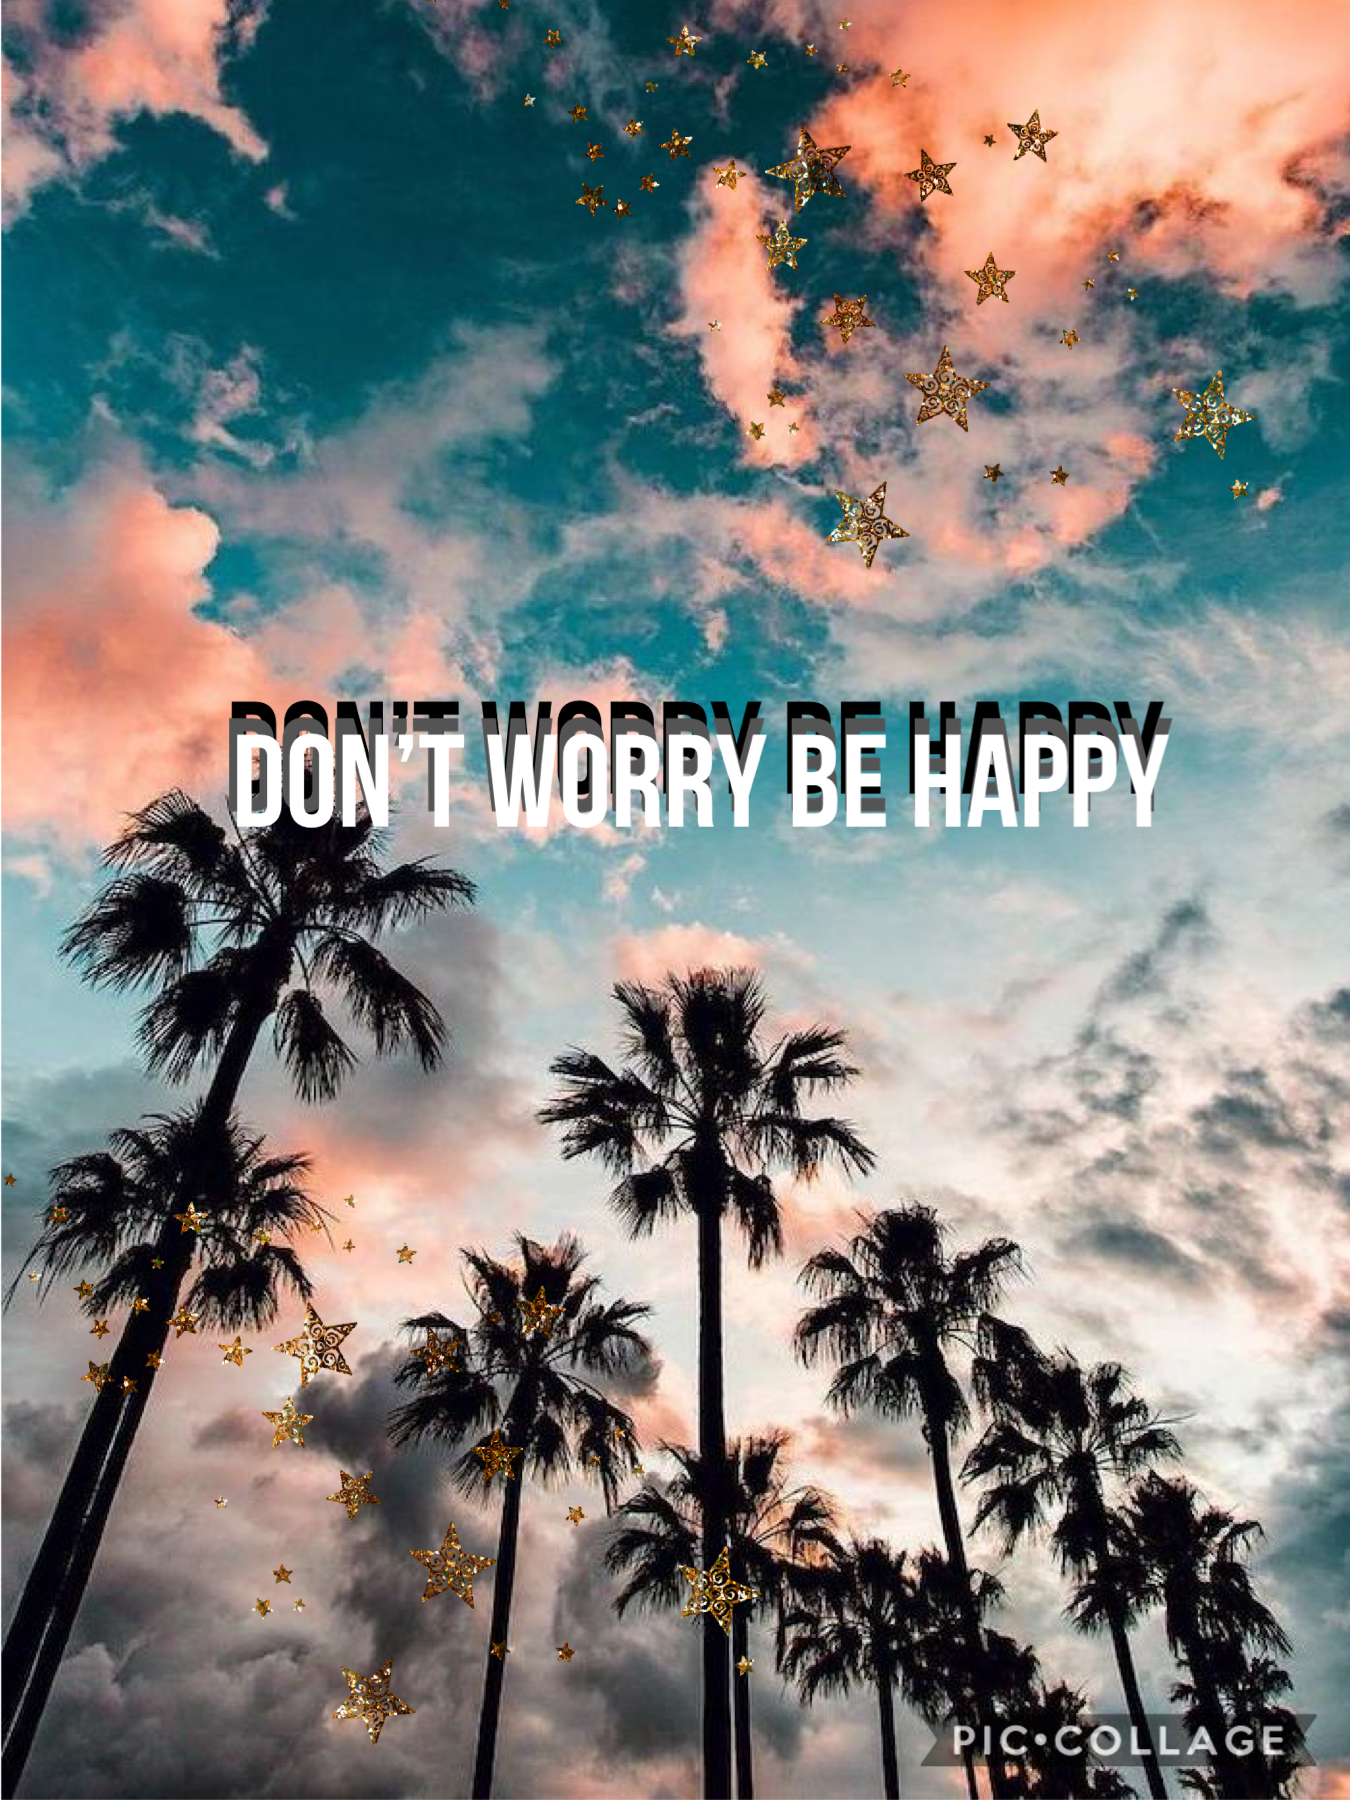 Be happy :D